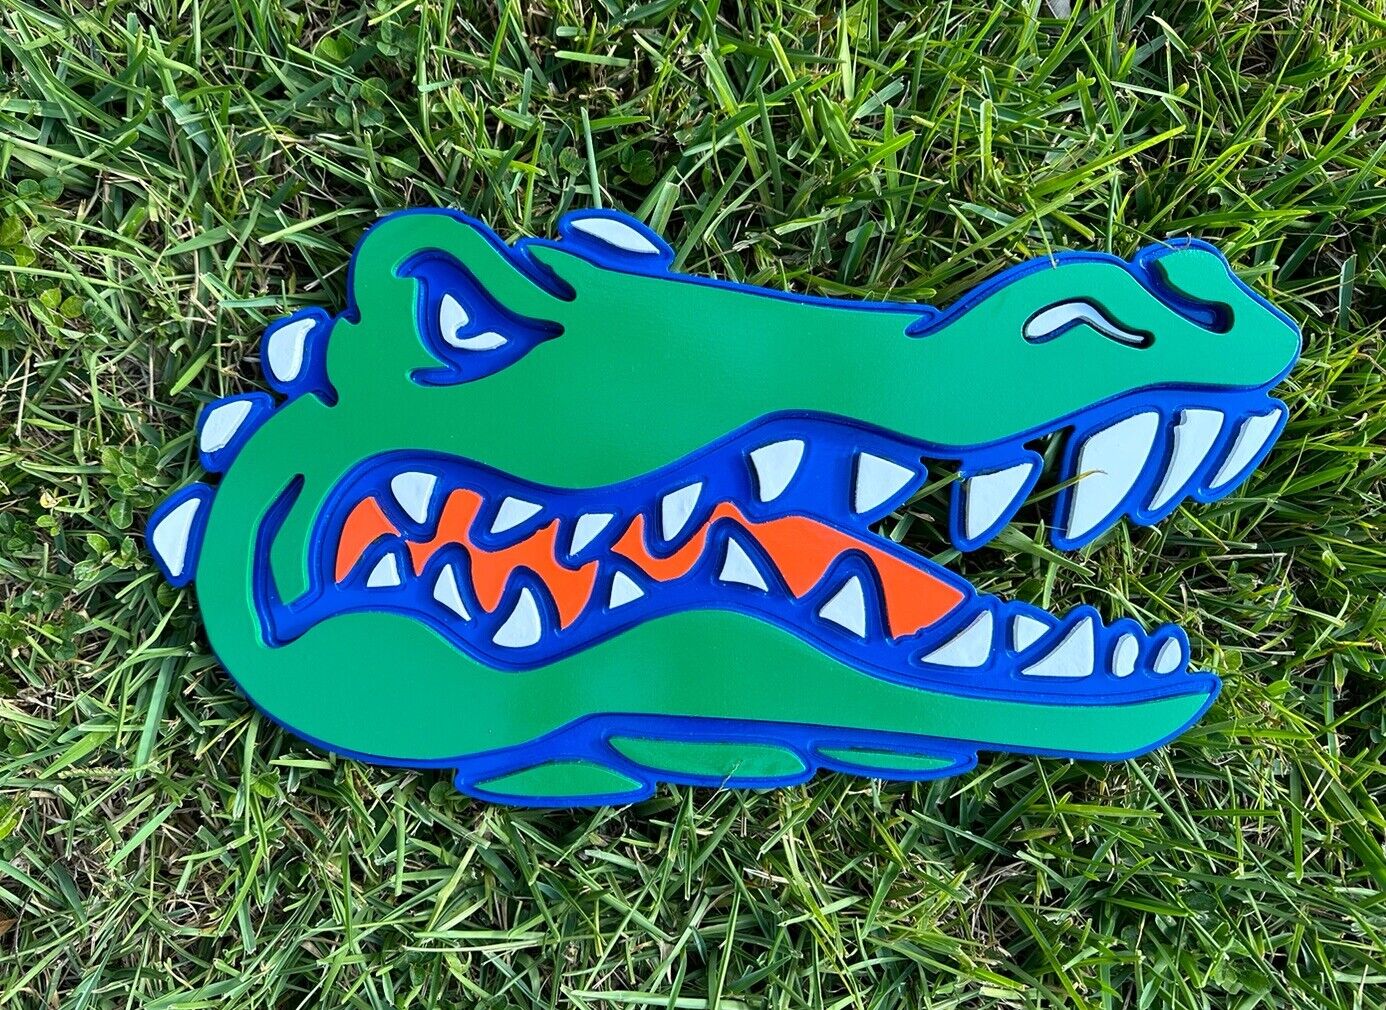 University of Florida - Florida Gators - UF - Wall/Door 2d Wood Decors Sign 